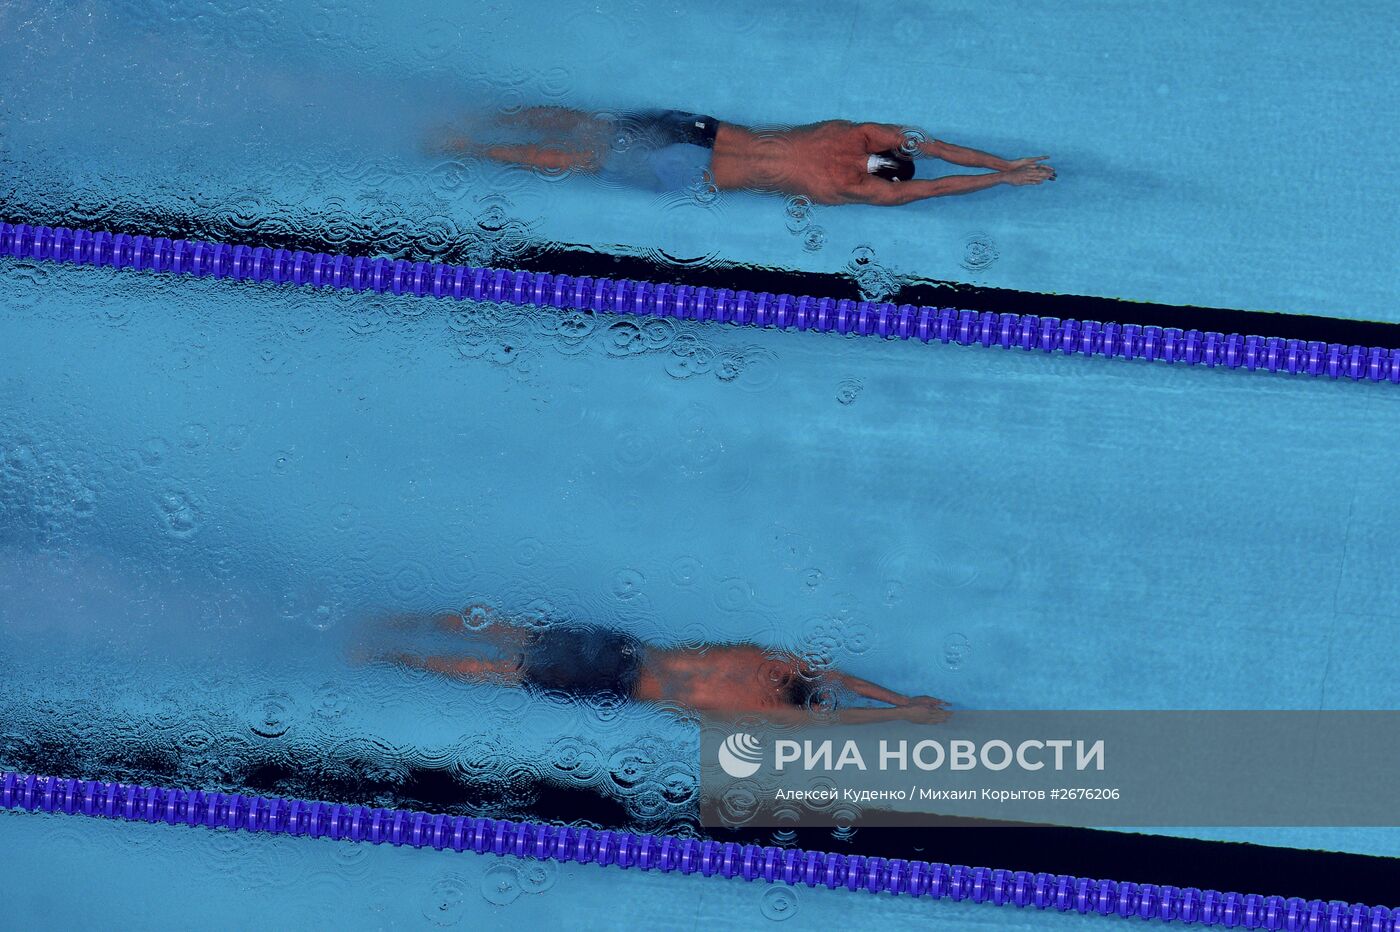 Чемпионат мира FINA 2015. Плавание. Шестой день. Вечерняя сессия